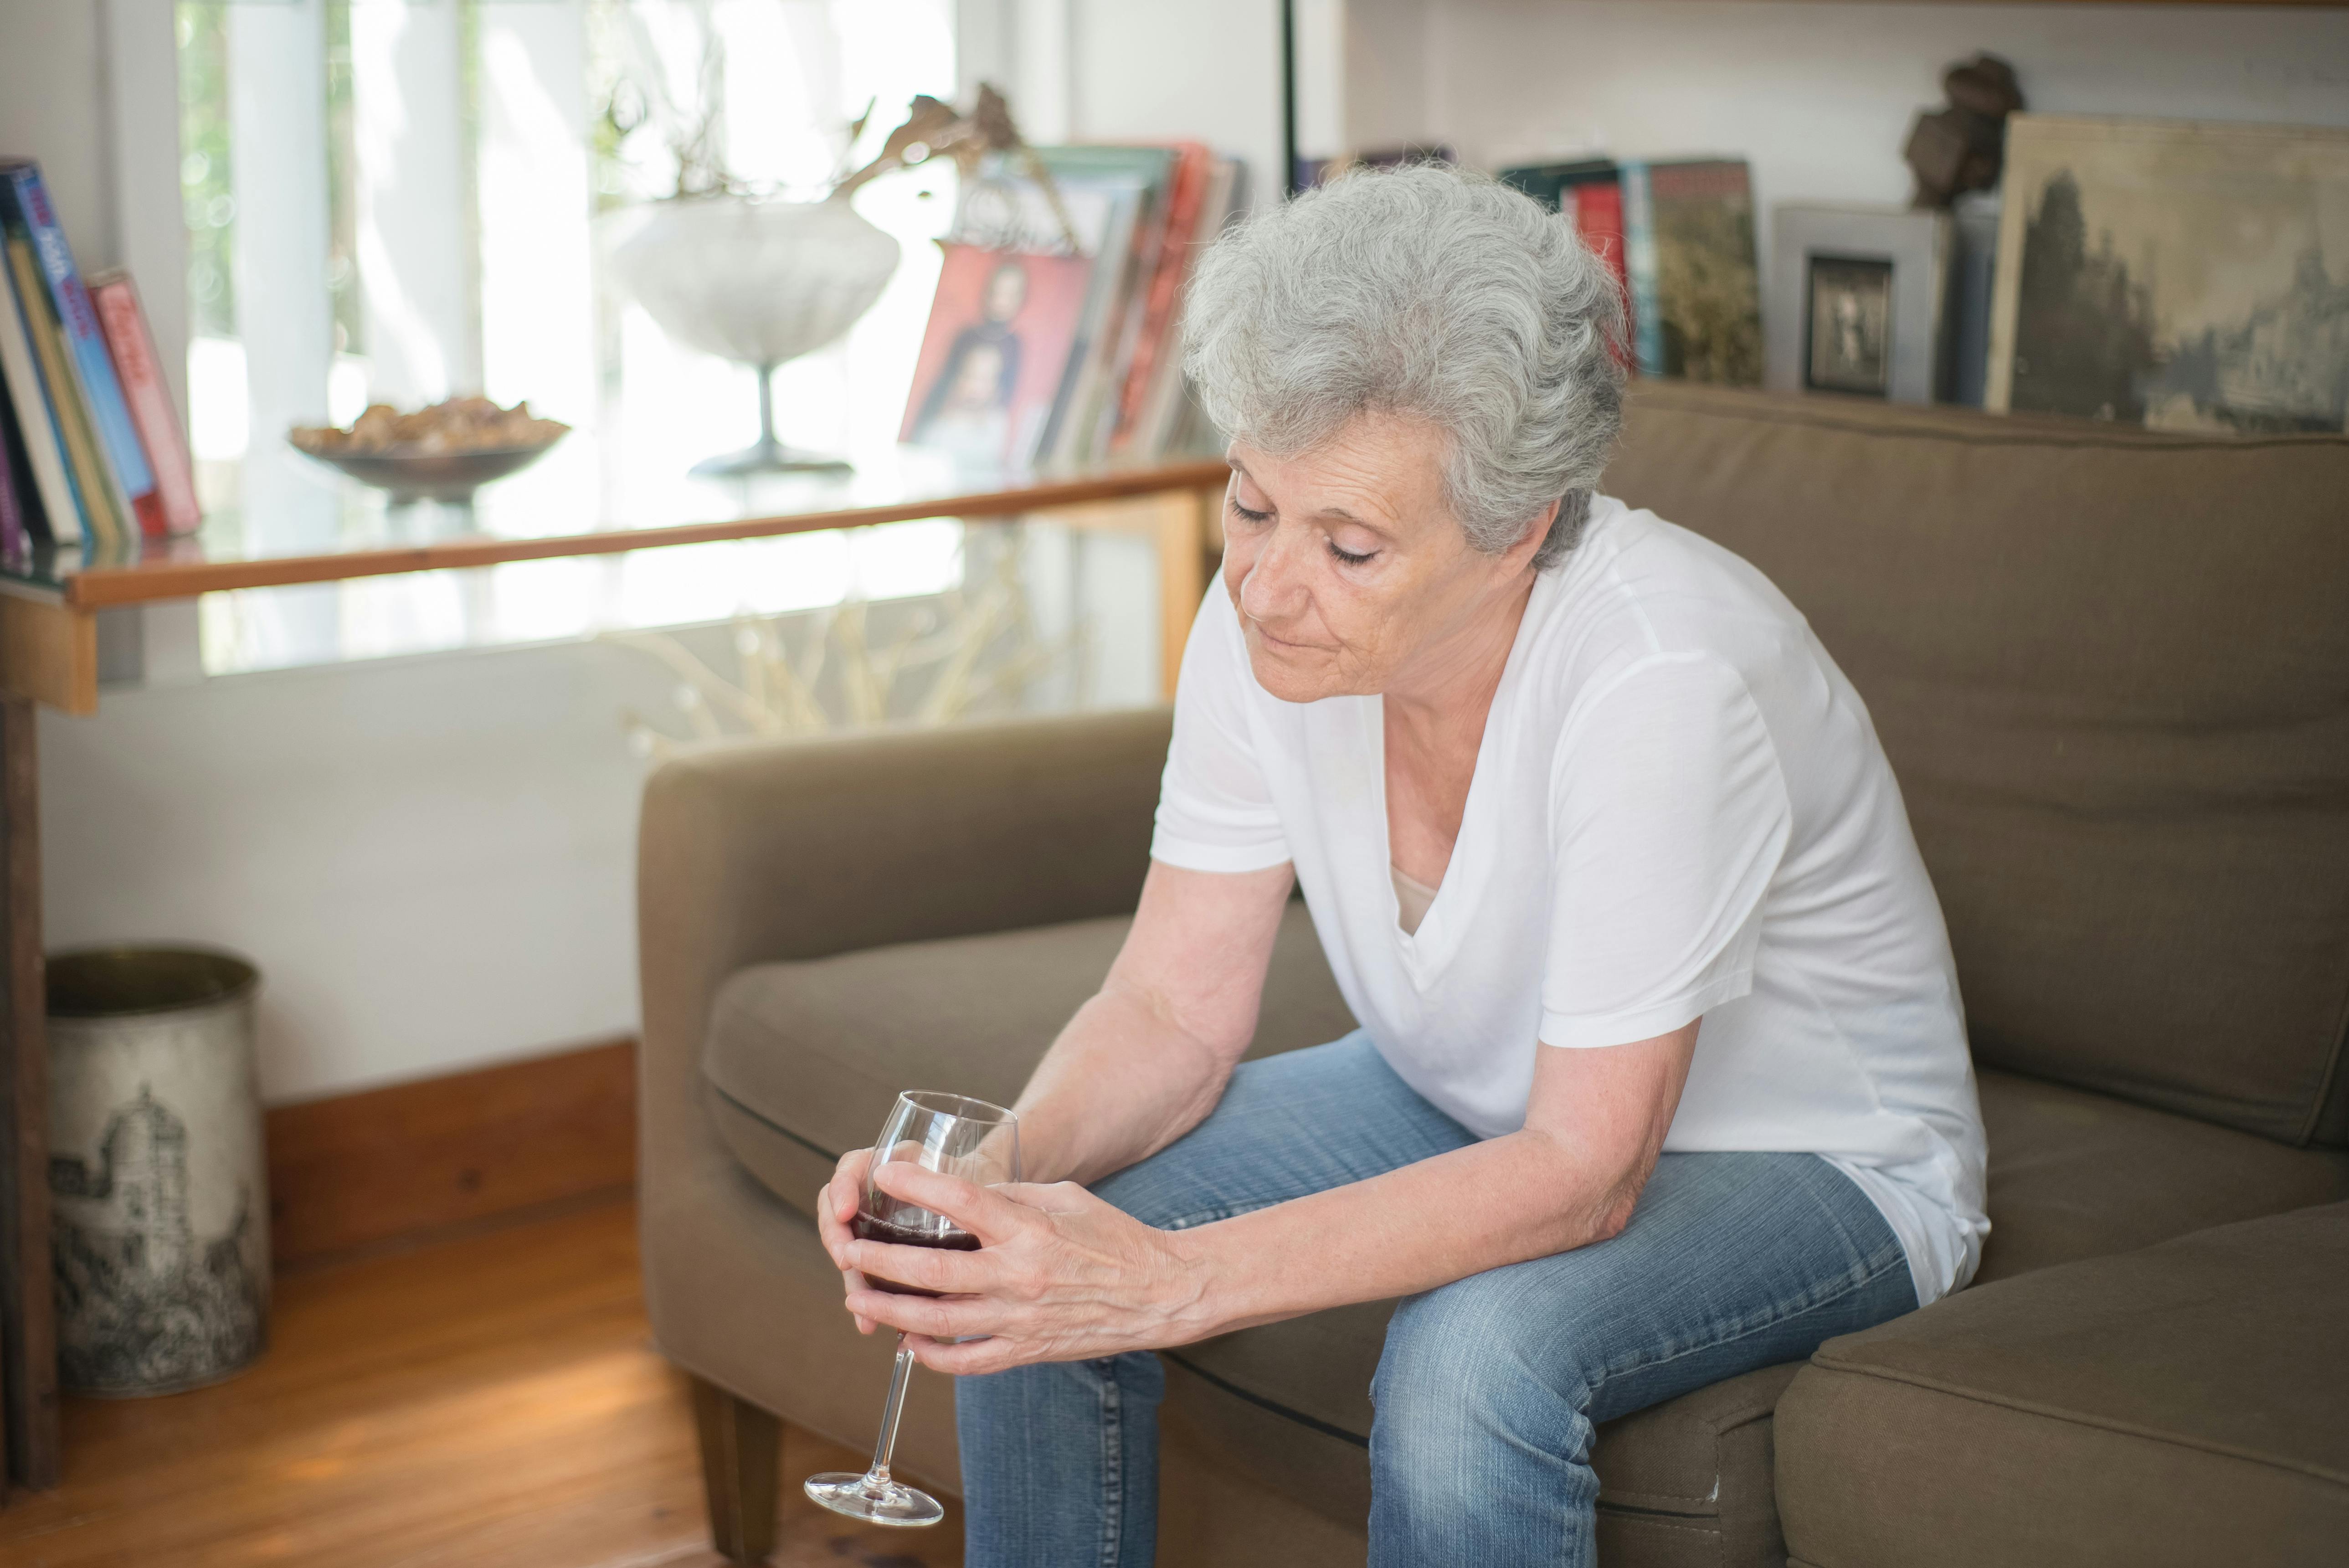 Una mujer de aspecto triste tomando una bebida sentada en un sofá | Fuente: Pexels